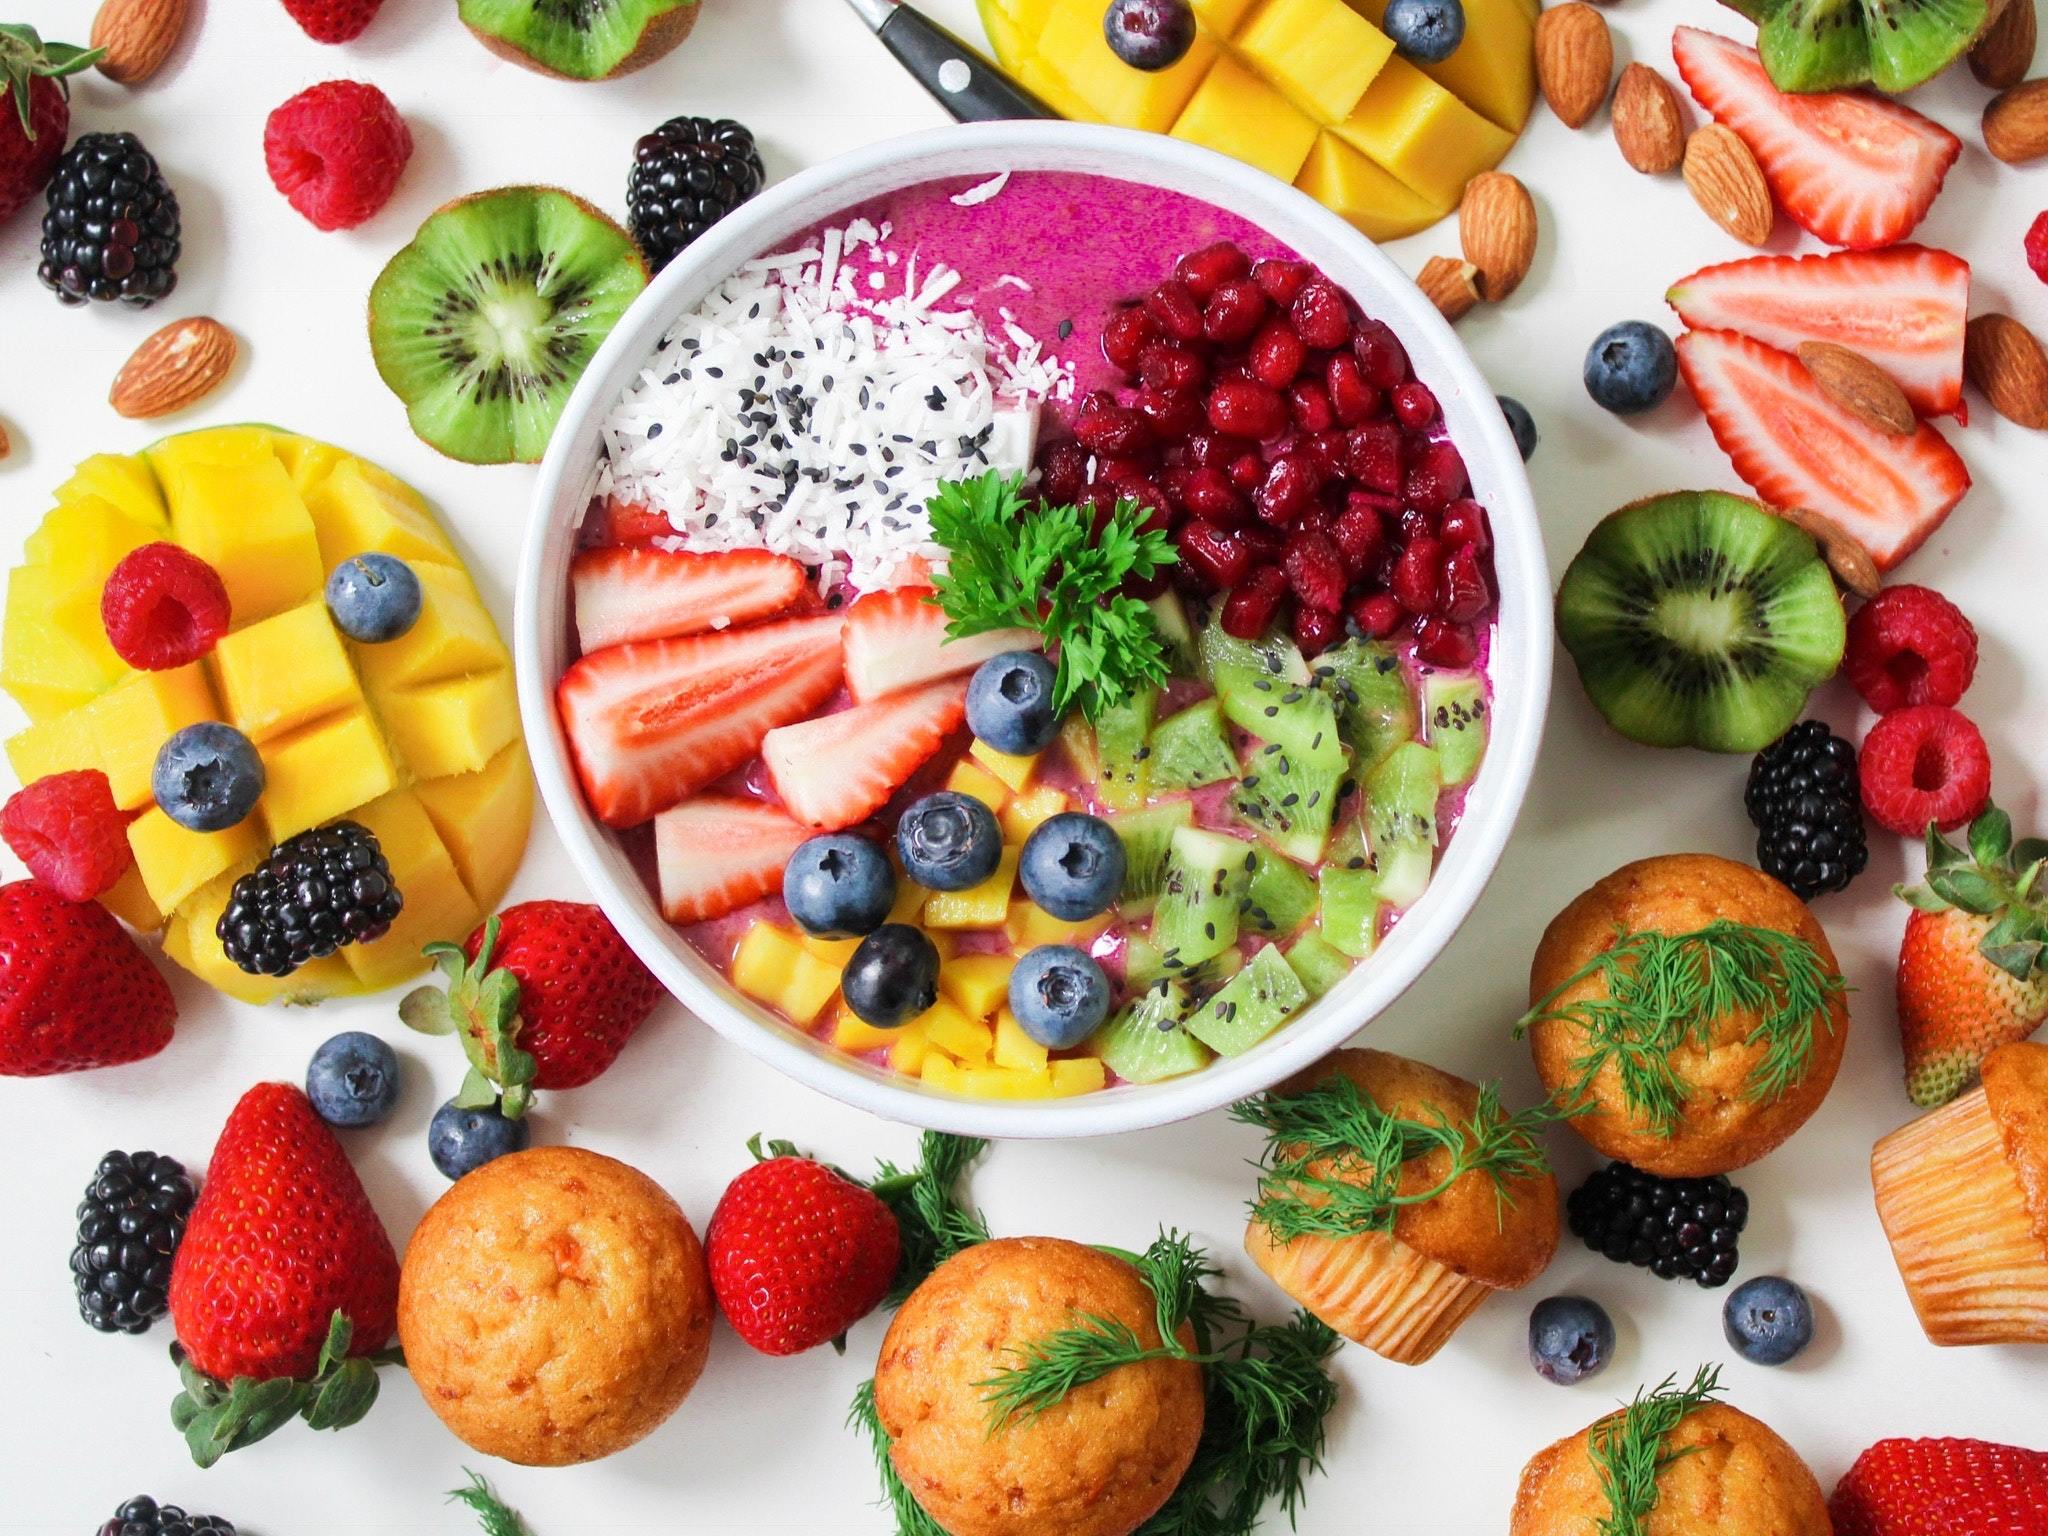 Healthy_foods_on_table_for_fruit_and_veggie_supplements-253884.jpg?v\u003d1690713279\u0026width\u003d1100